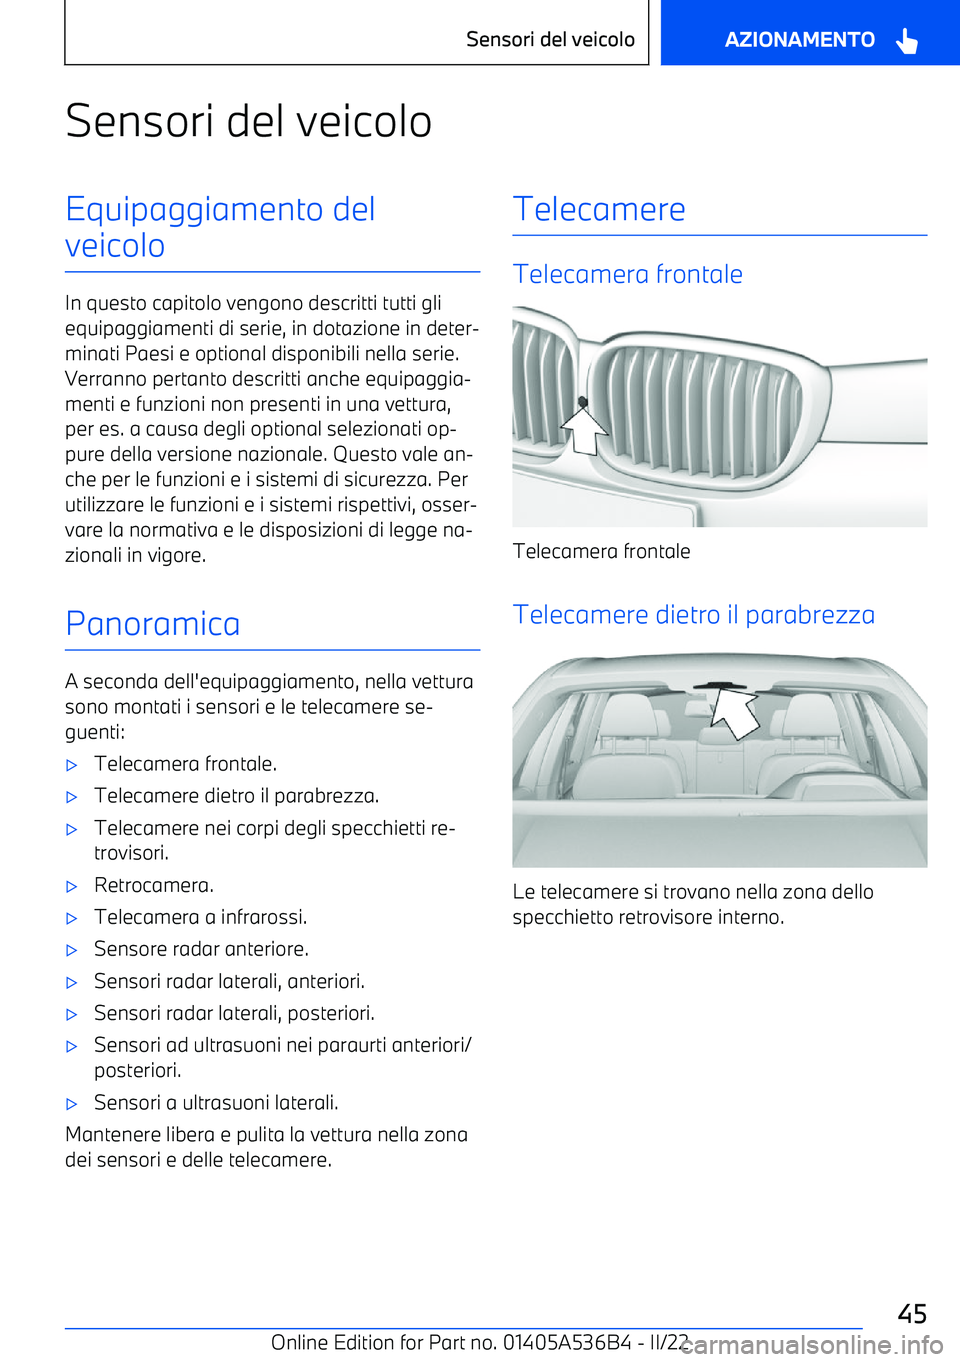 BMW X6 M 2022  Libretti Di Uso E manutenzione (in Italian) Sensori del veicoloEquipaggiamento del
veicolo
In questo capitolo vengono descritti tutti gli equipaggiamenti di serie, in dotazione in deter